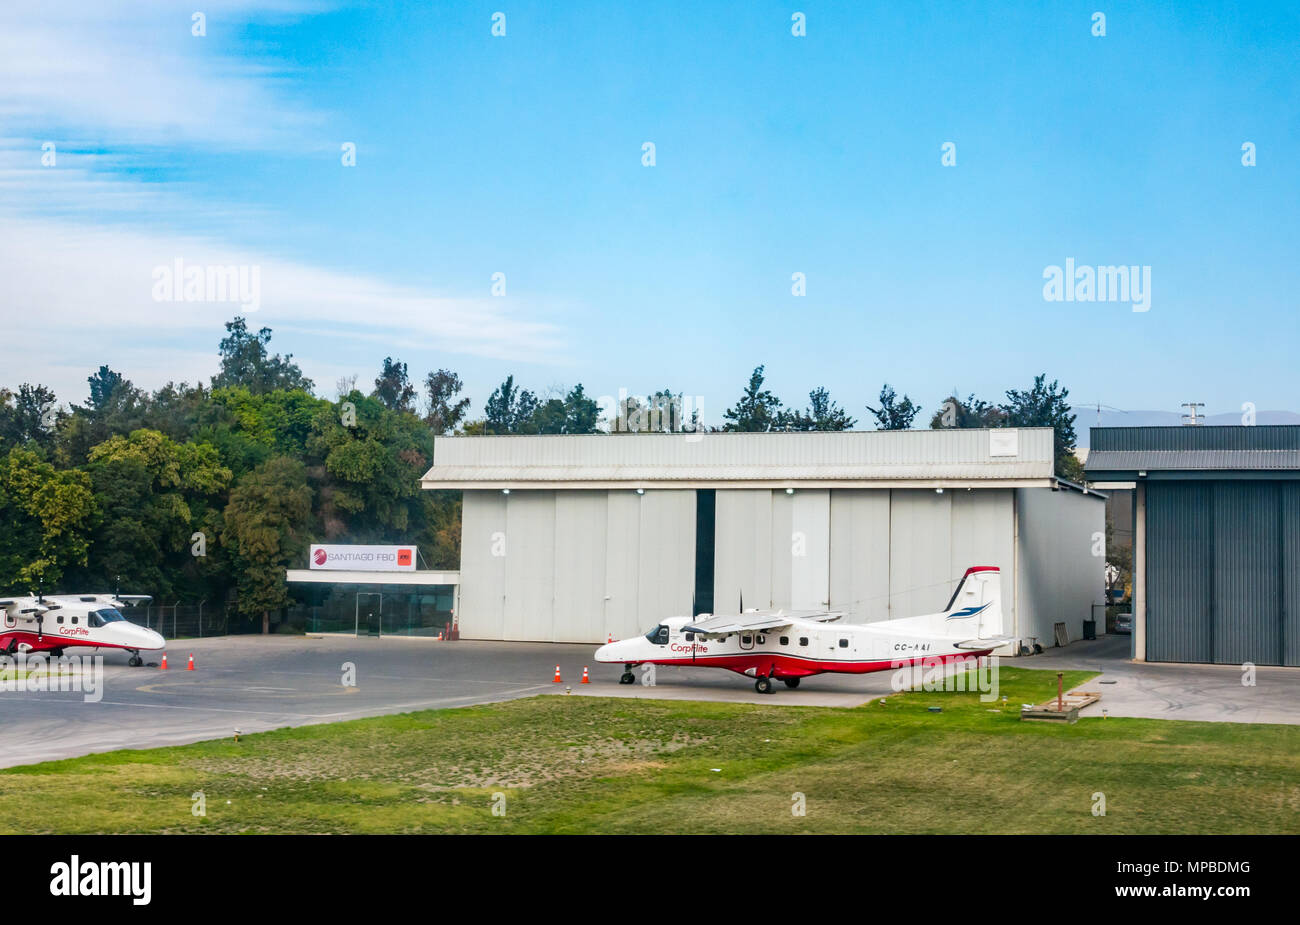 Corpflite la charte de l'hélice n'avions parqués par hangar, Comodoro Arturo Merino Benítez de l'Aéroport International, Santiago, Chili, Amérique du Sud Banque D'Images